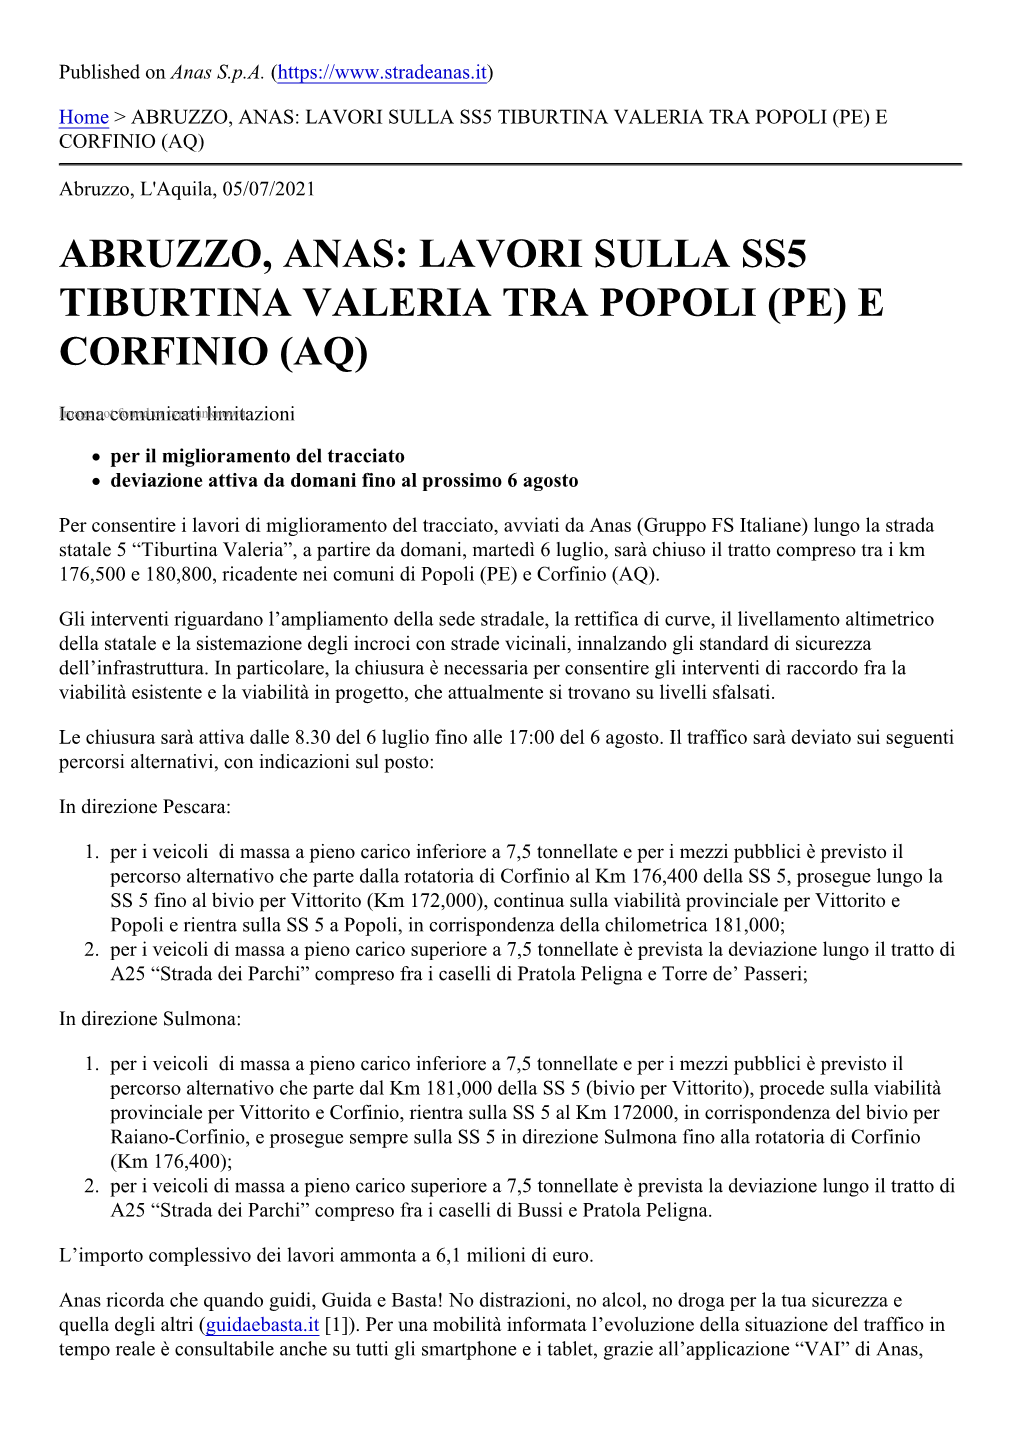 Abruzzo, Anas: Lavori Sulla Ss5 Tiburtina Valeria Tra Popoli (Pe) E Corfinio (Aq)